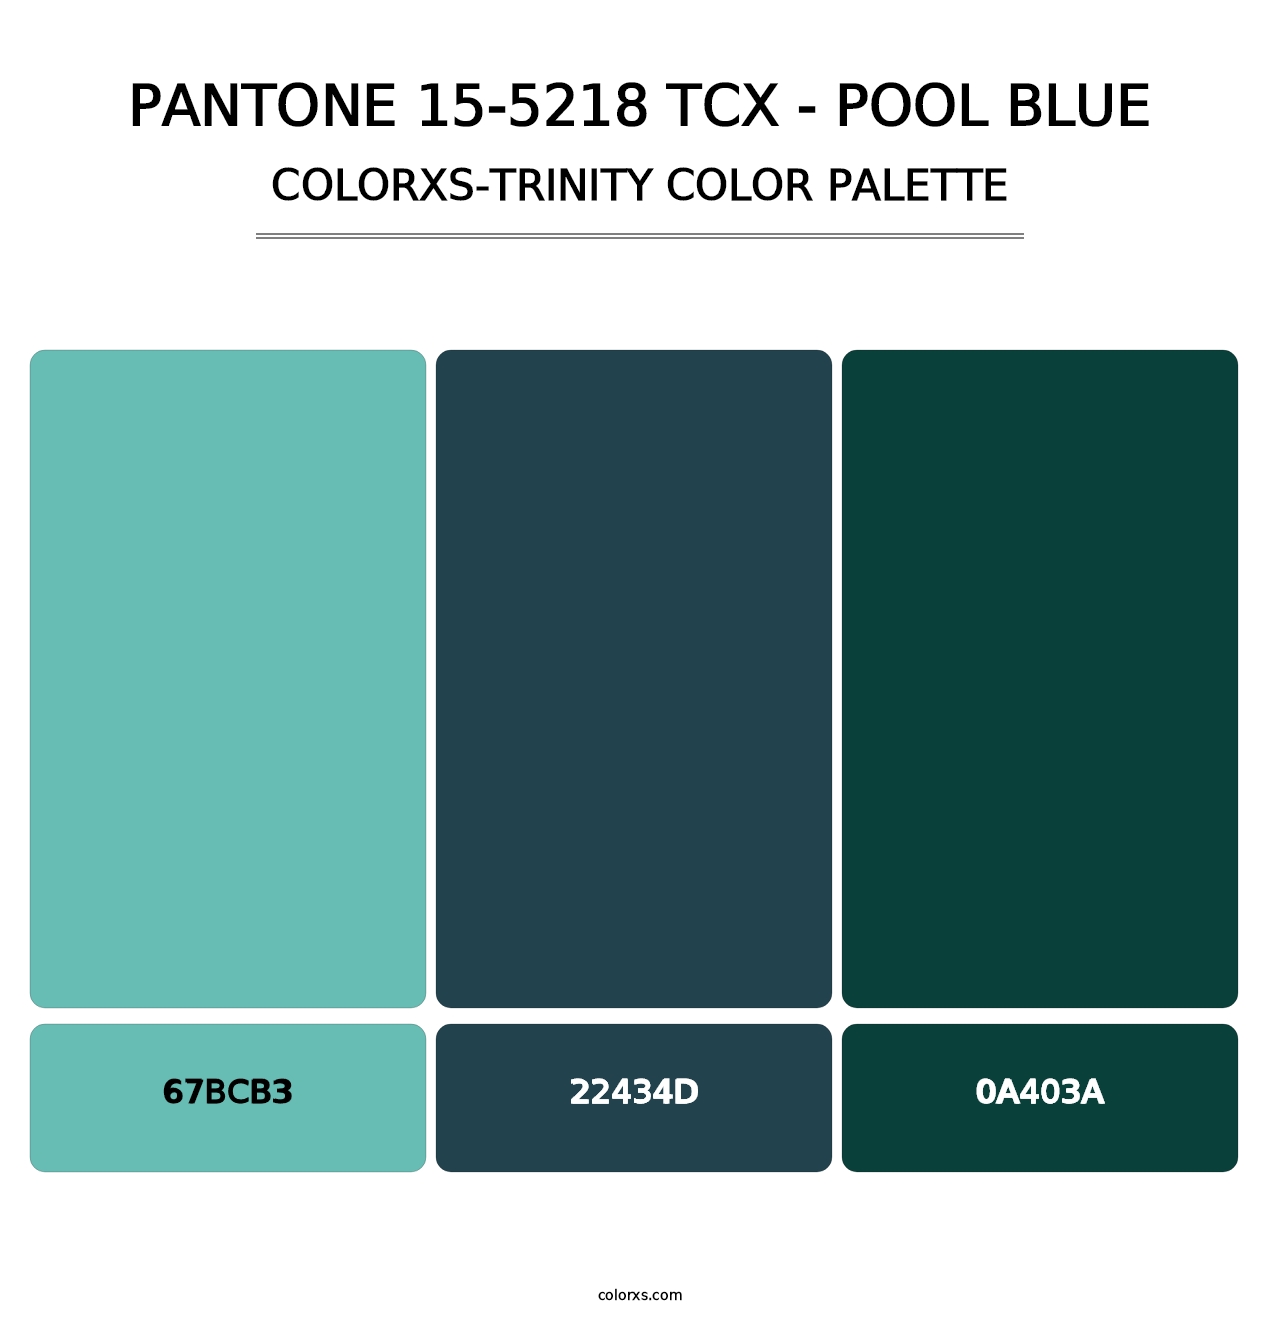 PANTONE 15-5218 TCX - Pool Blue - Colorxs Trinity Palette